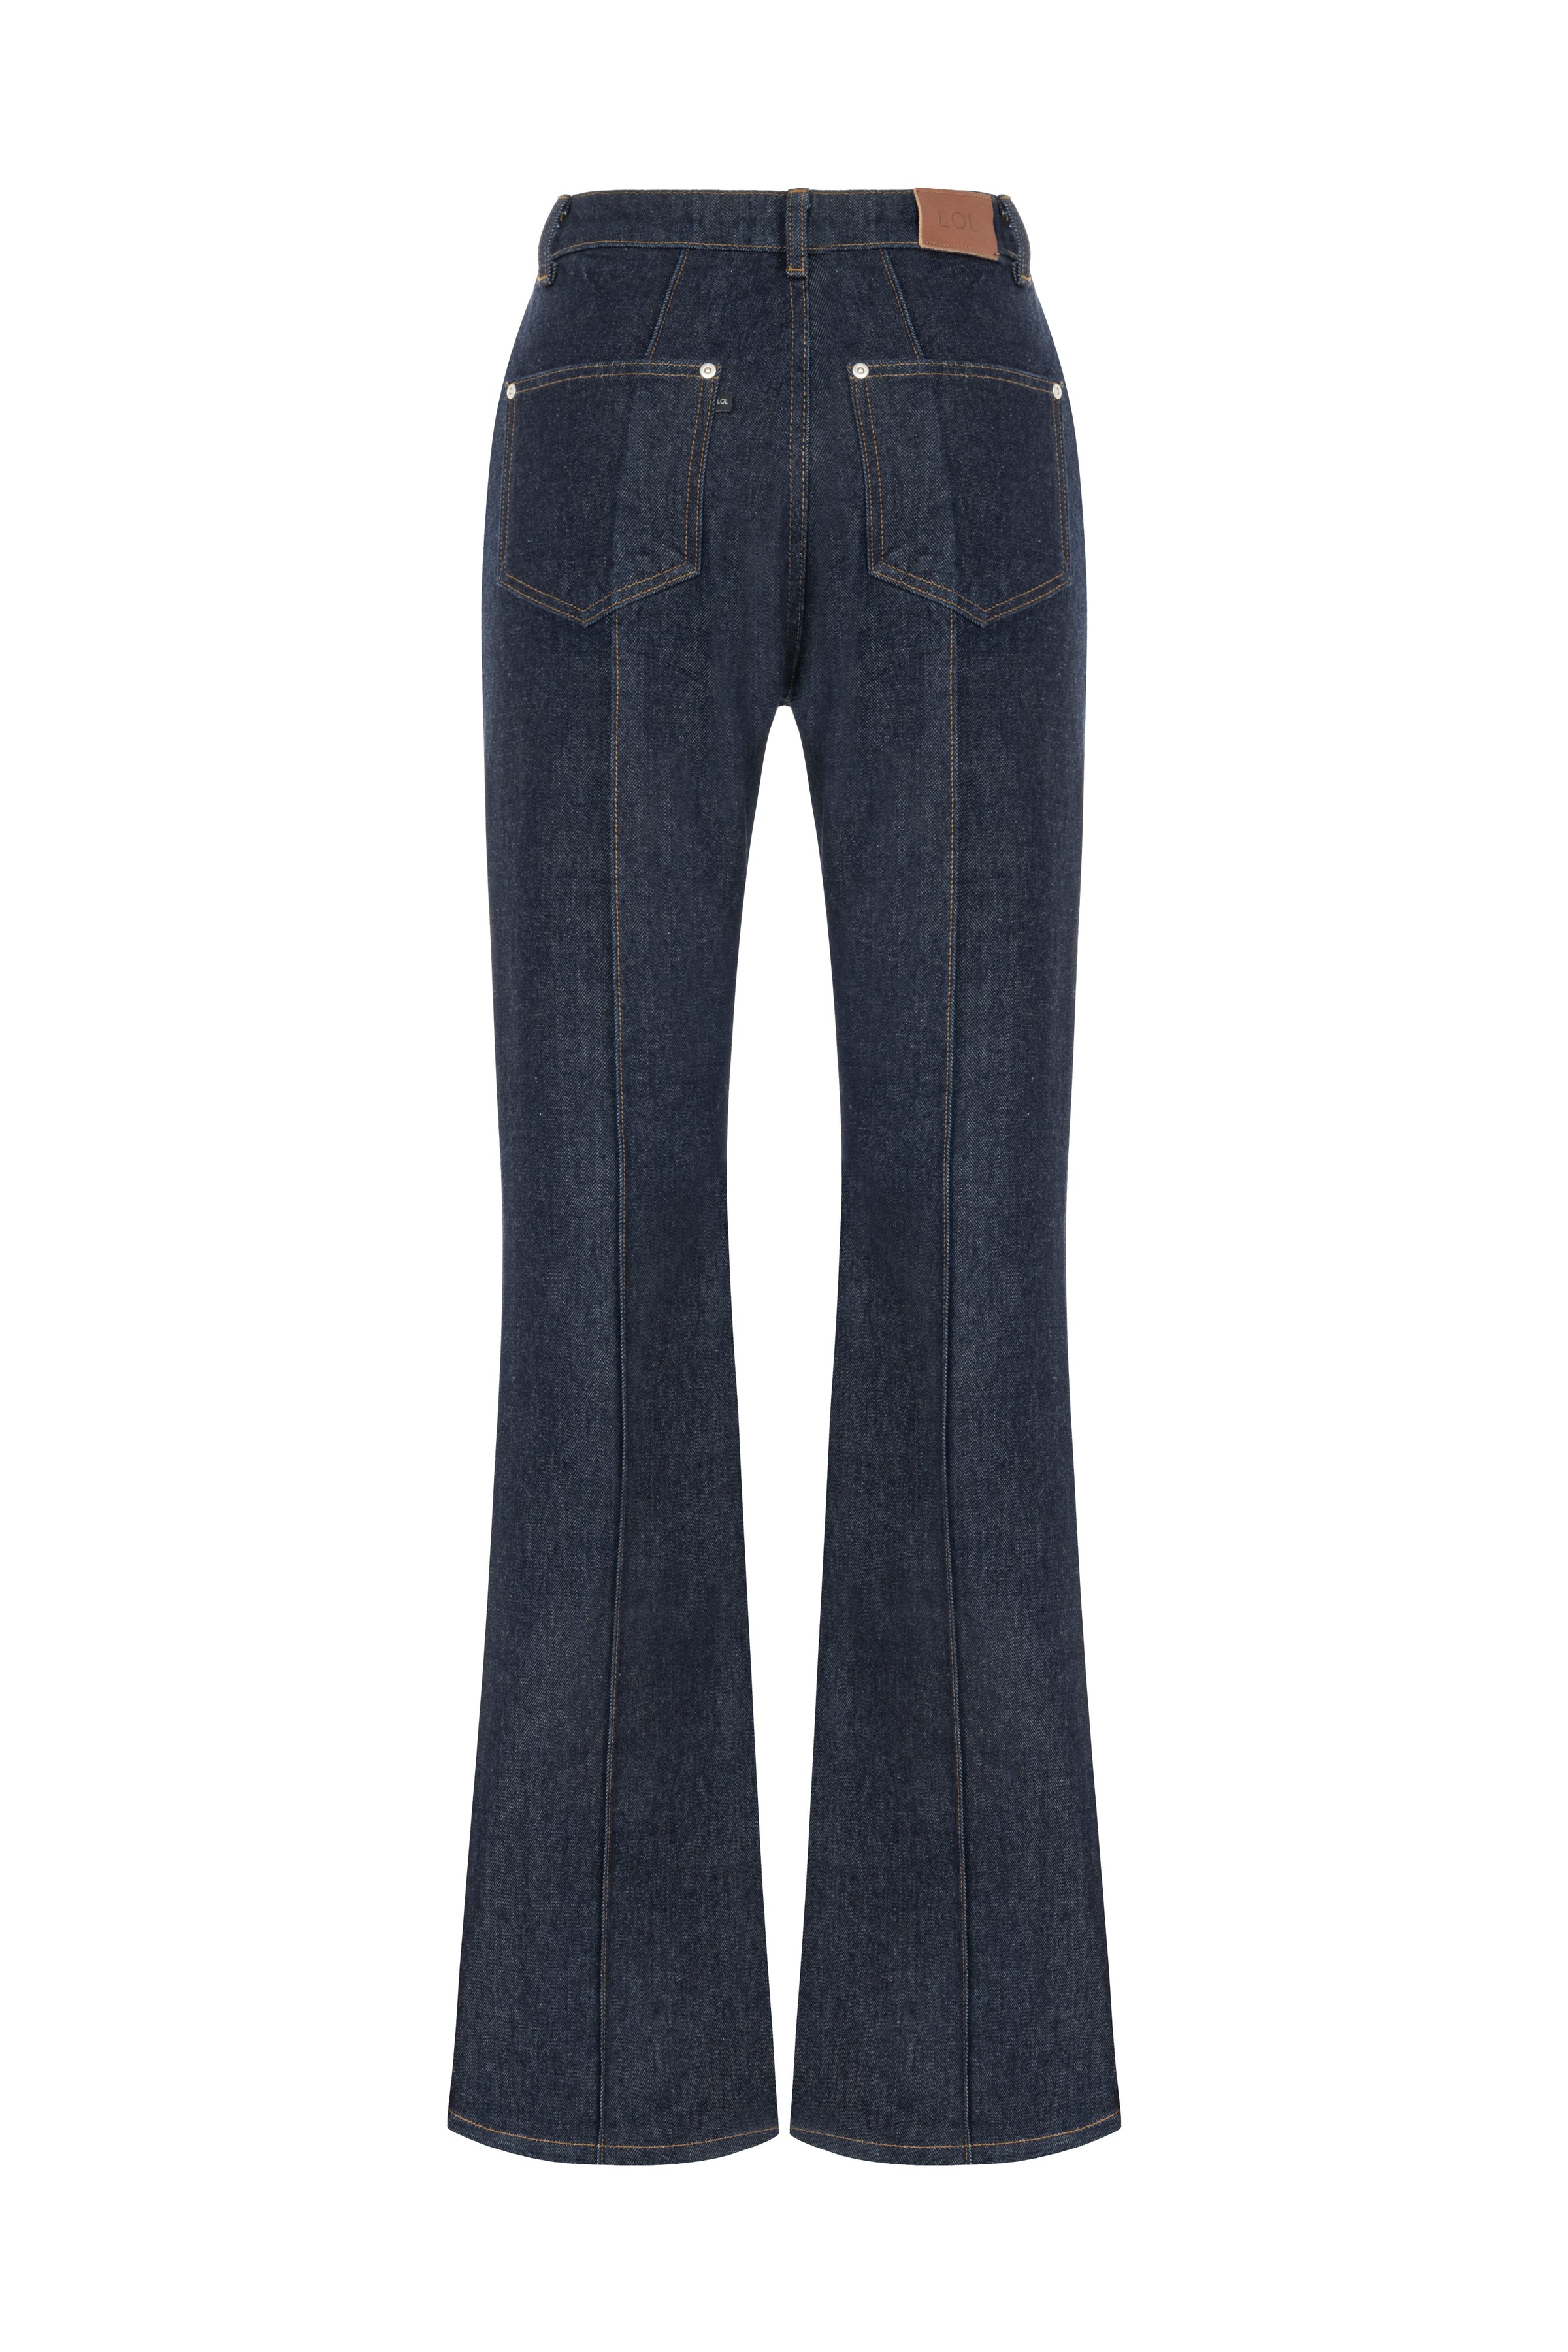 Kasia Jeans Pre Order Lol Official Website